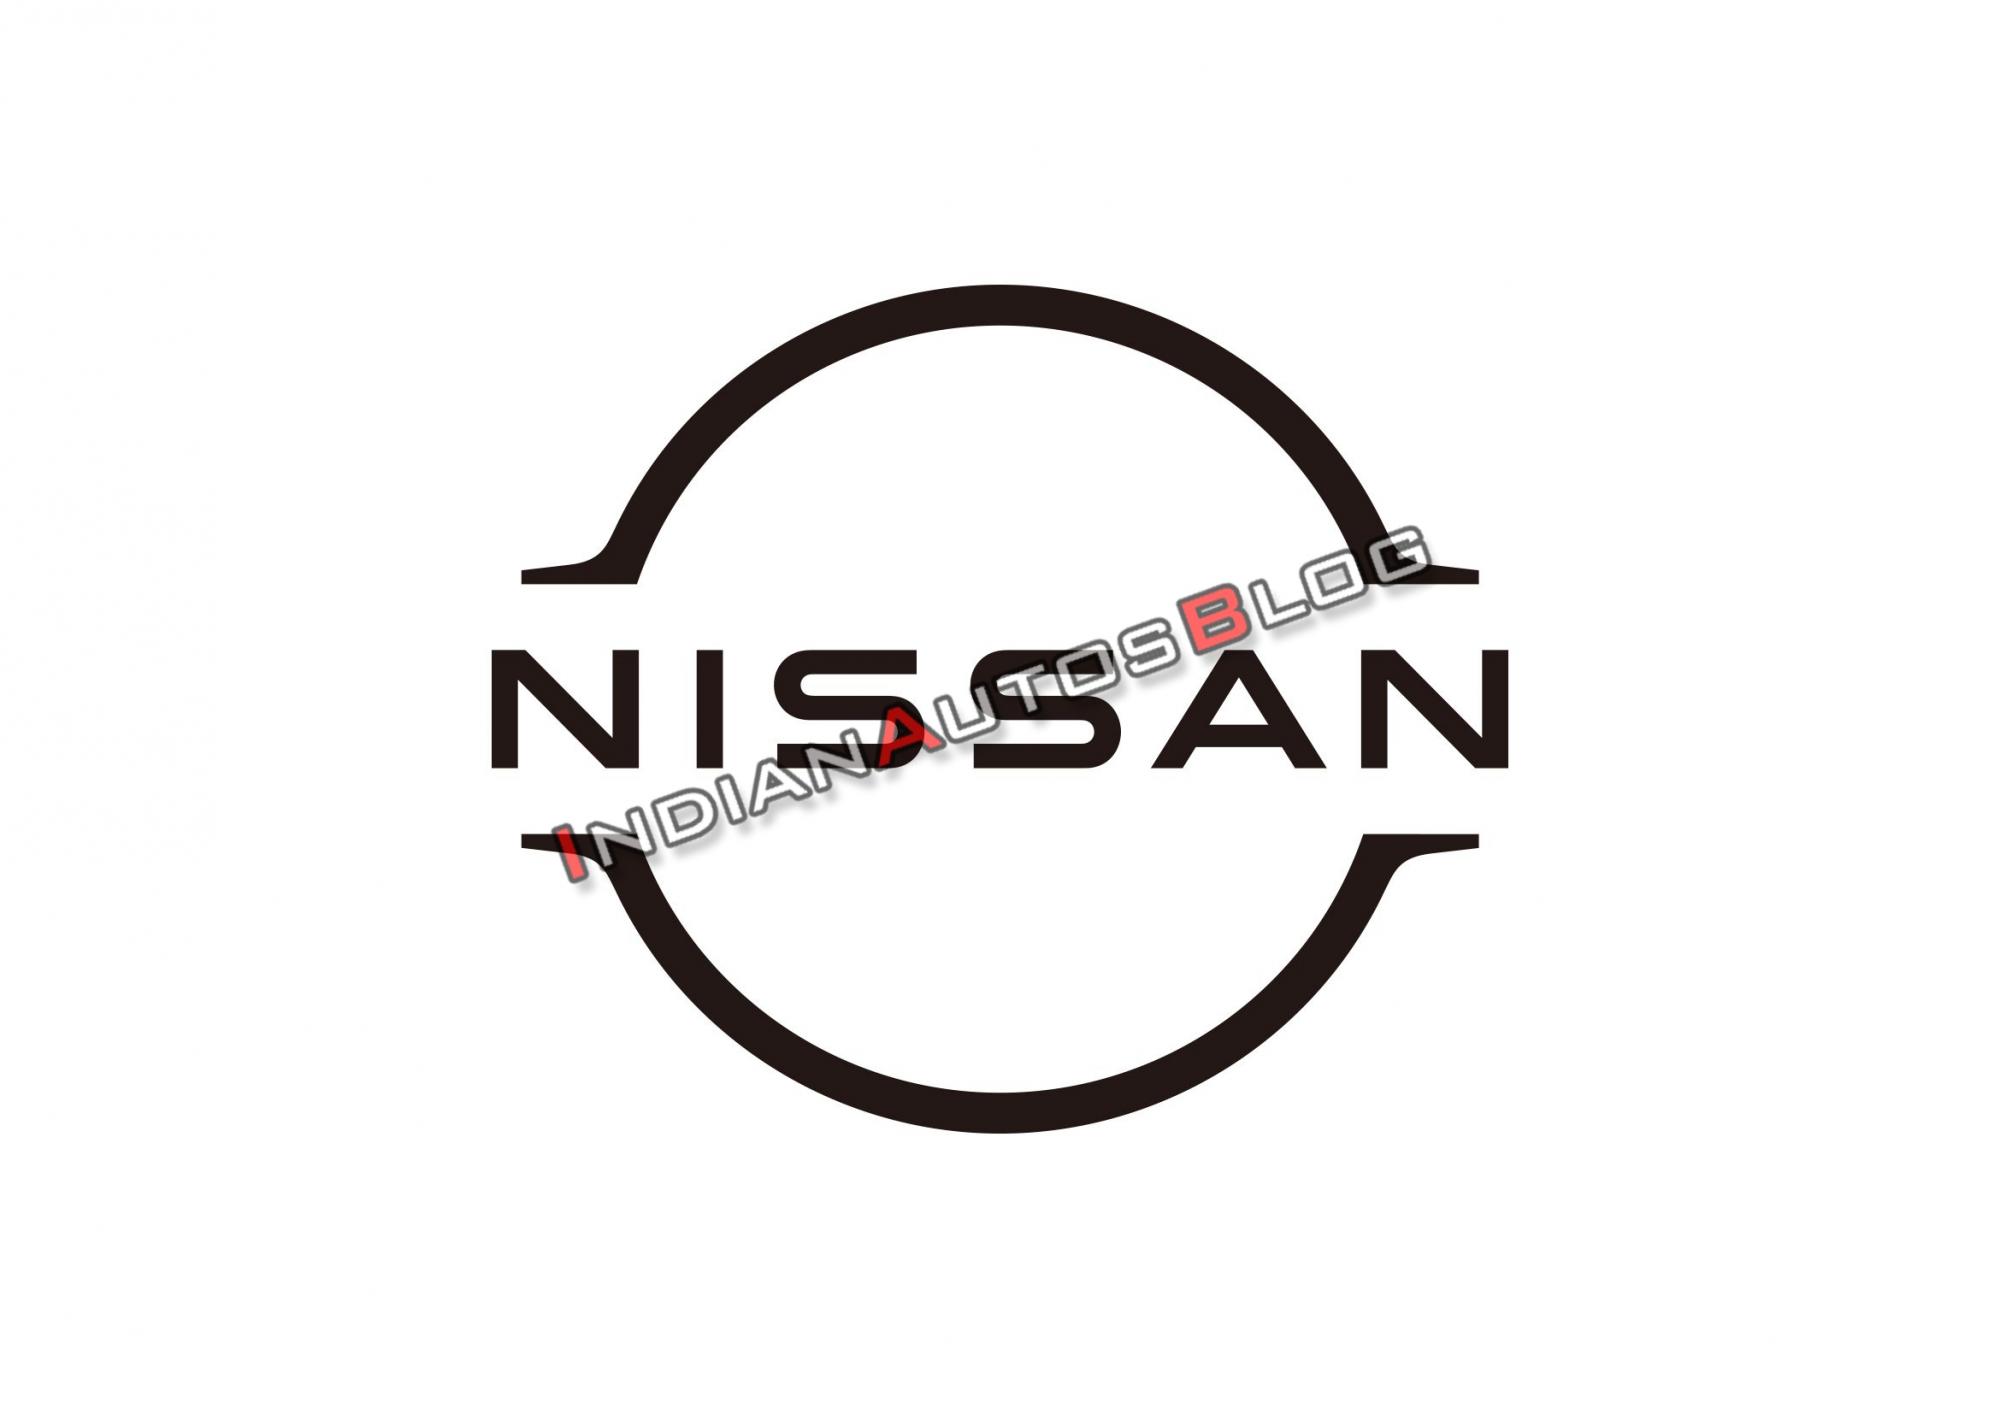 Buôn bán yếu kém, Nissan sắp thay logo để đổi 'phong thủy'